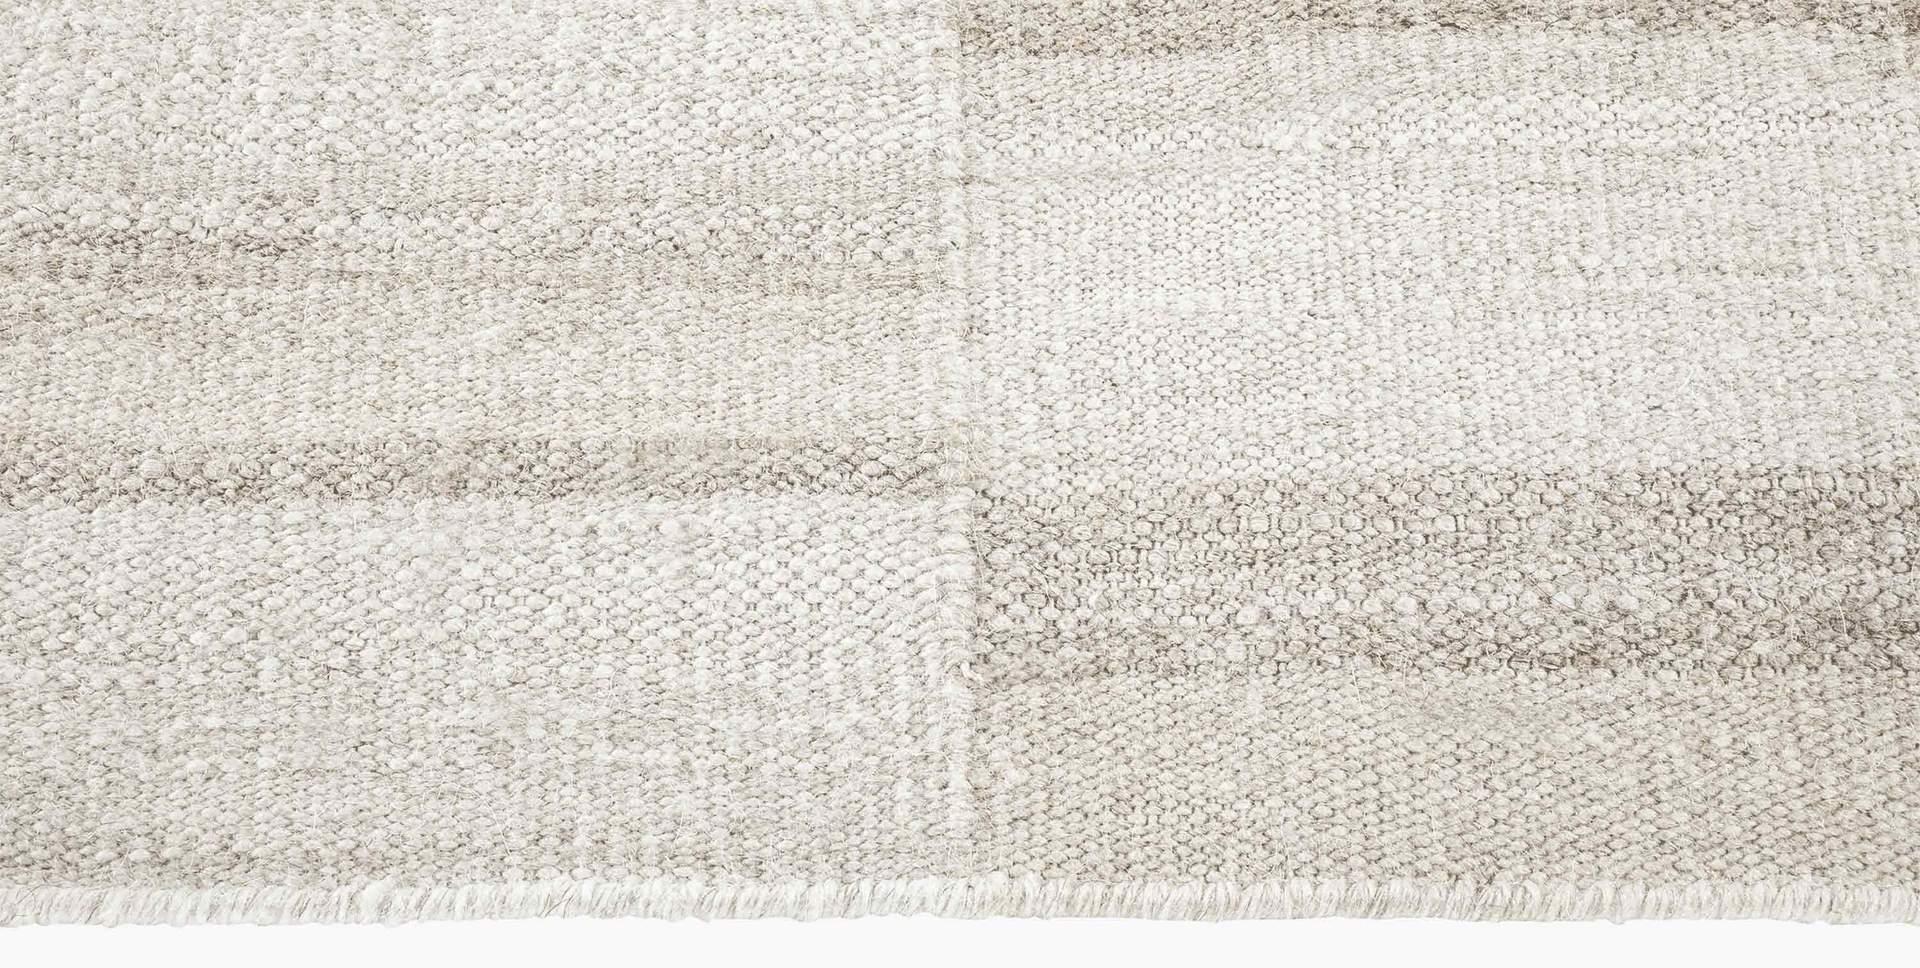 For Sale: Beige (Alterno Sand) Ben Soleimani Alterno Rug– Hand-woven Textured Soft Wool Sand 10'x14' 3